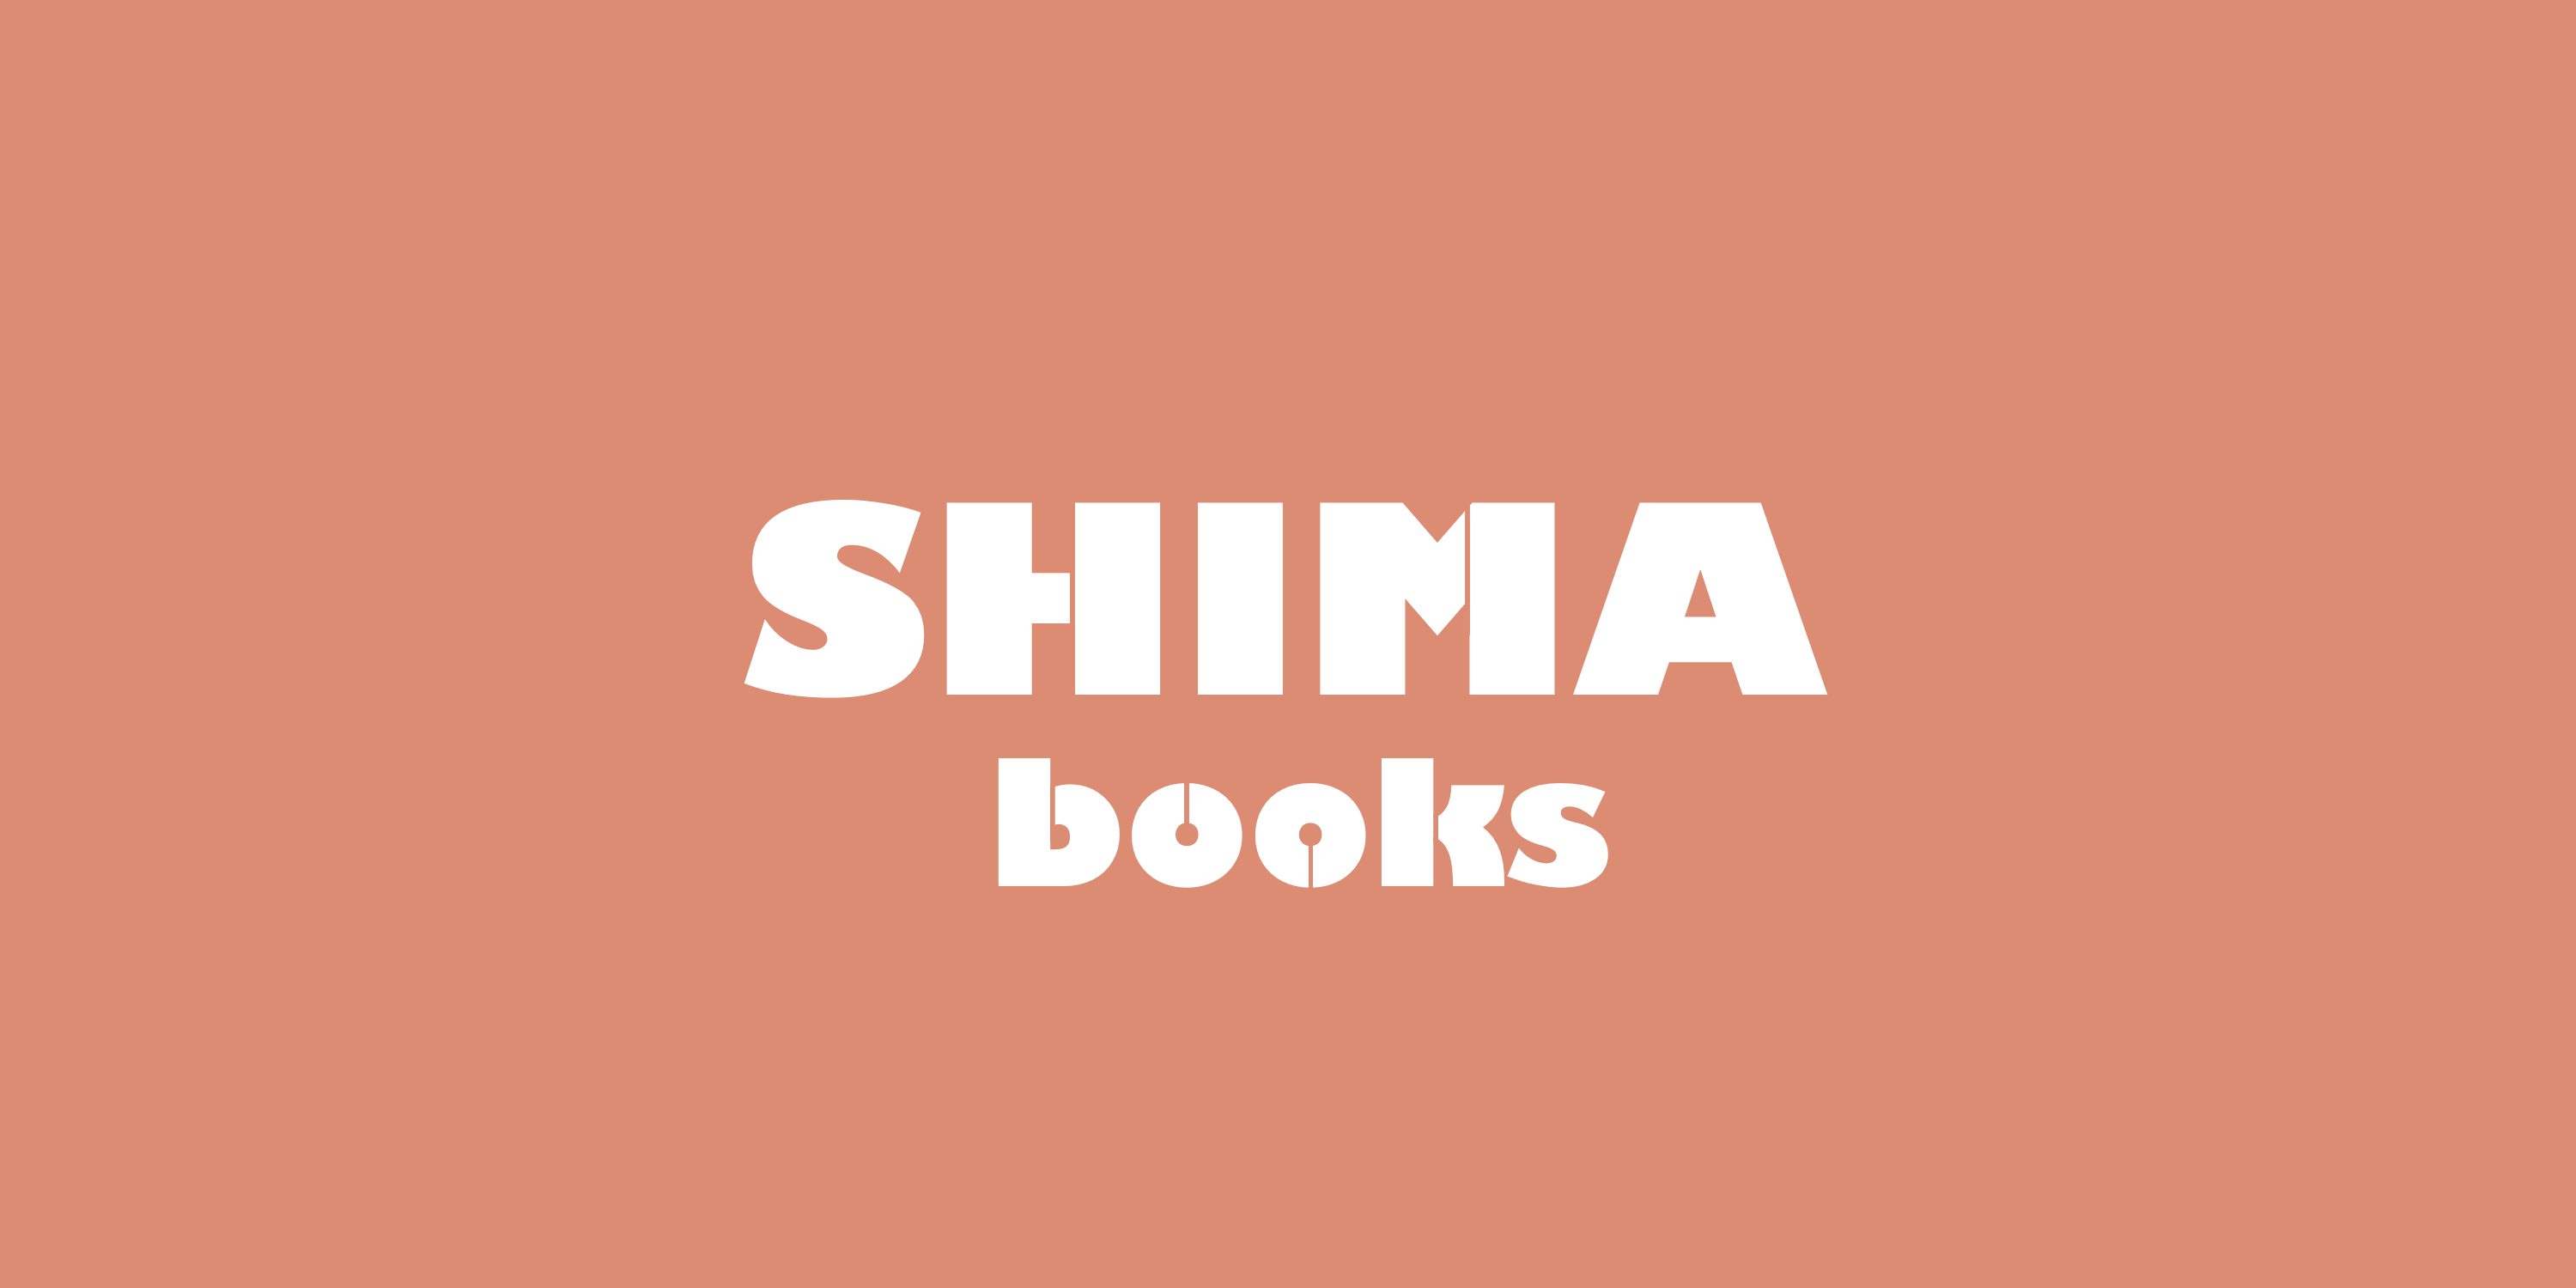 SHIMA BOOKS